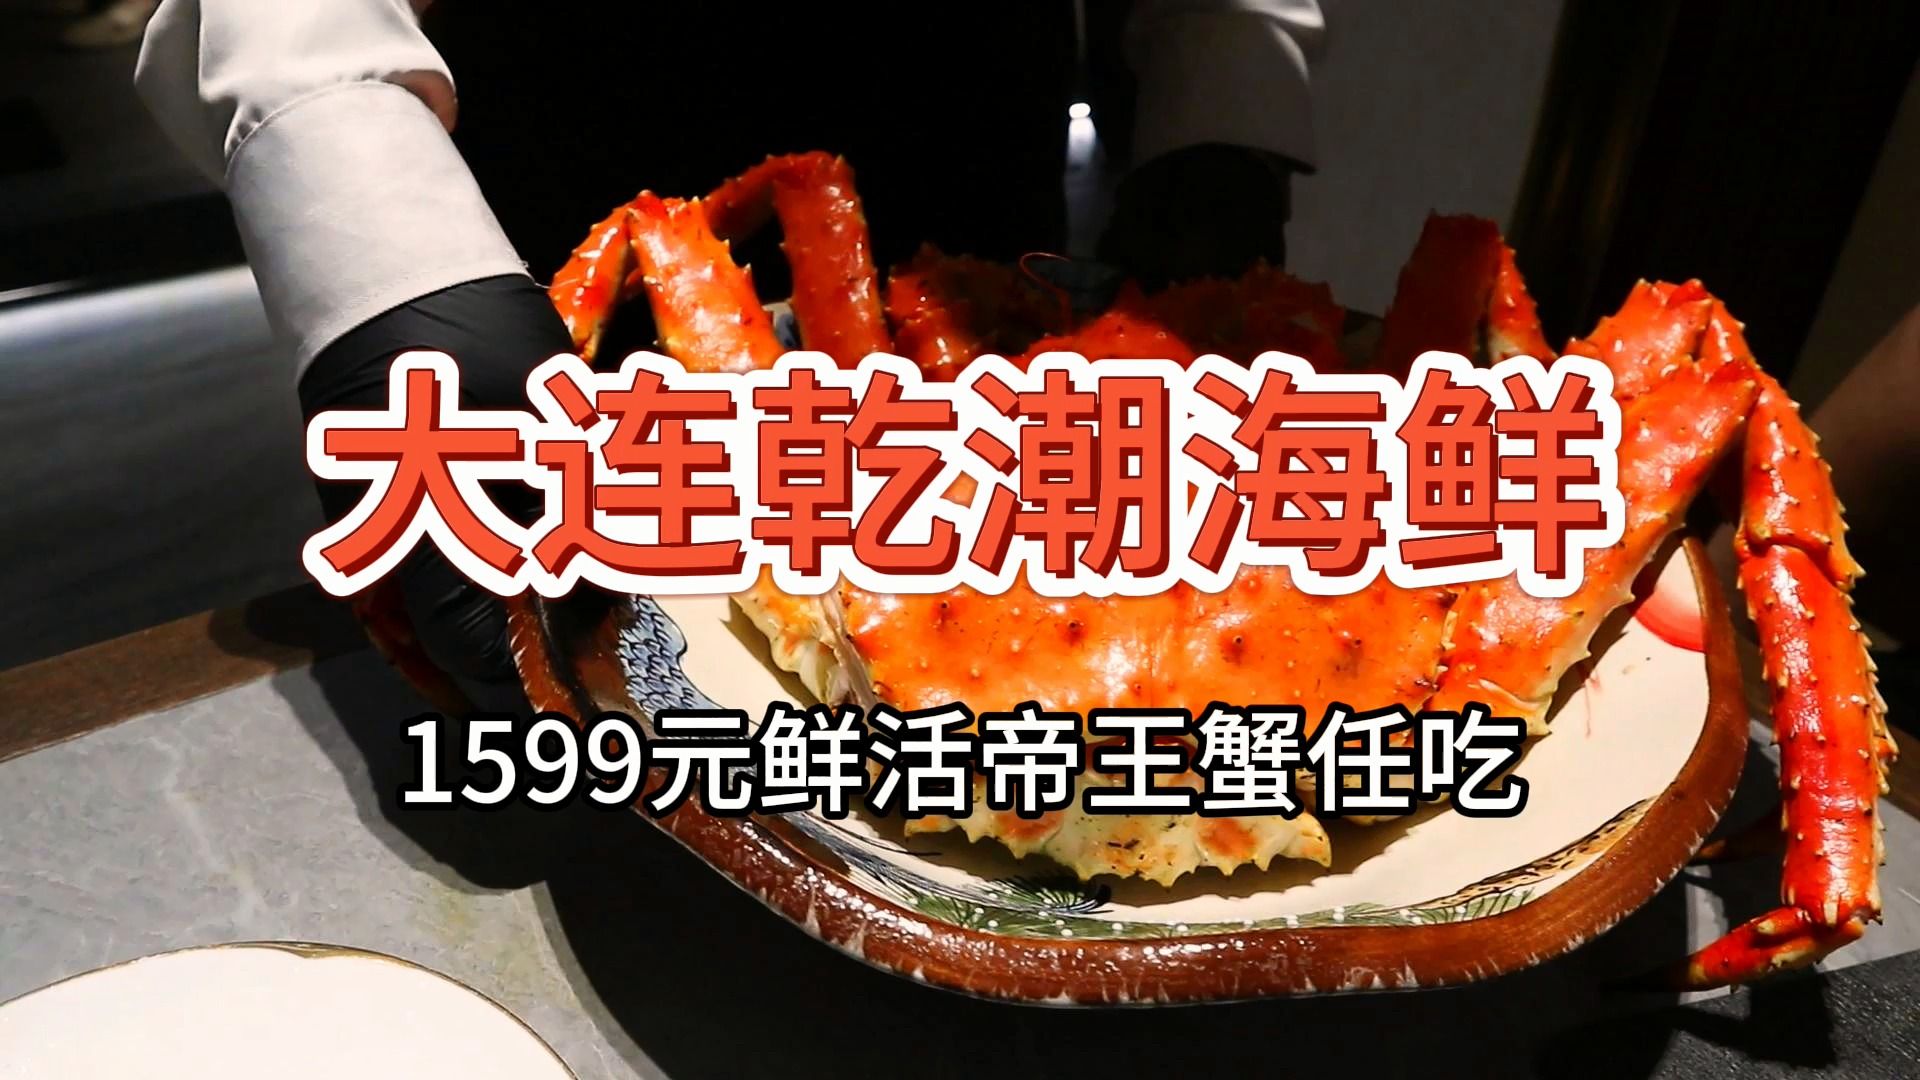 【大连乾潮海鲜自助】1599元 鲜活帝王蟹龙虾任吃